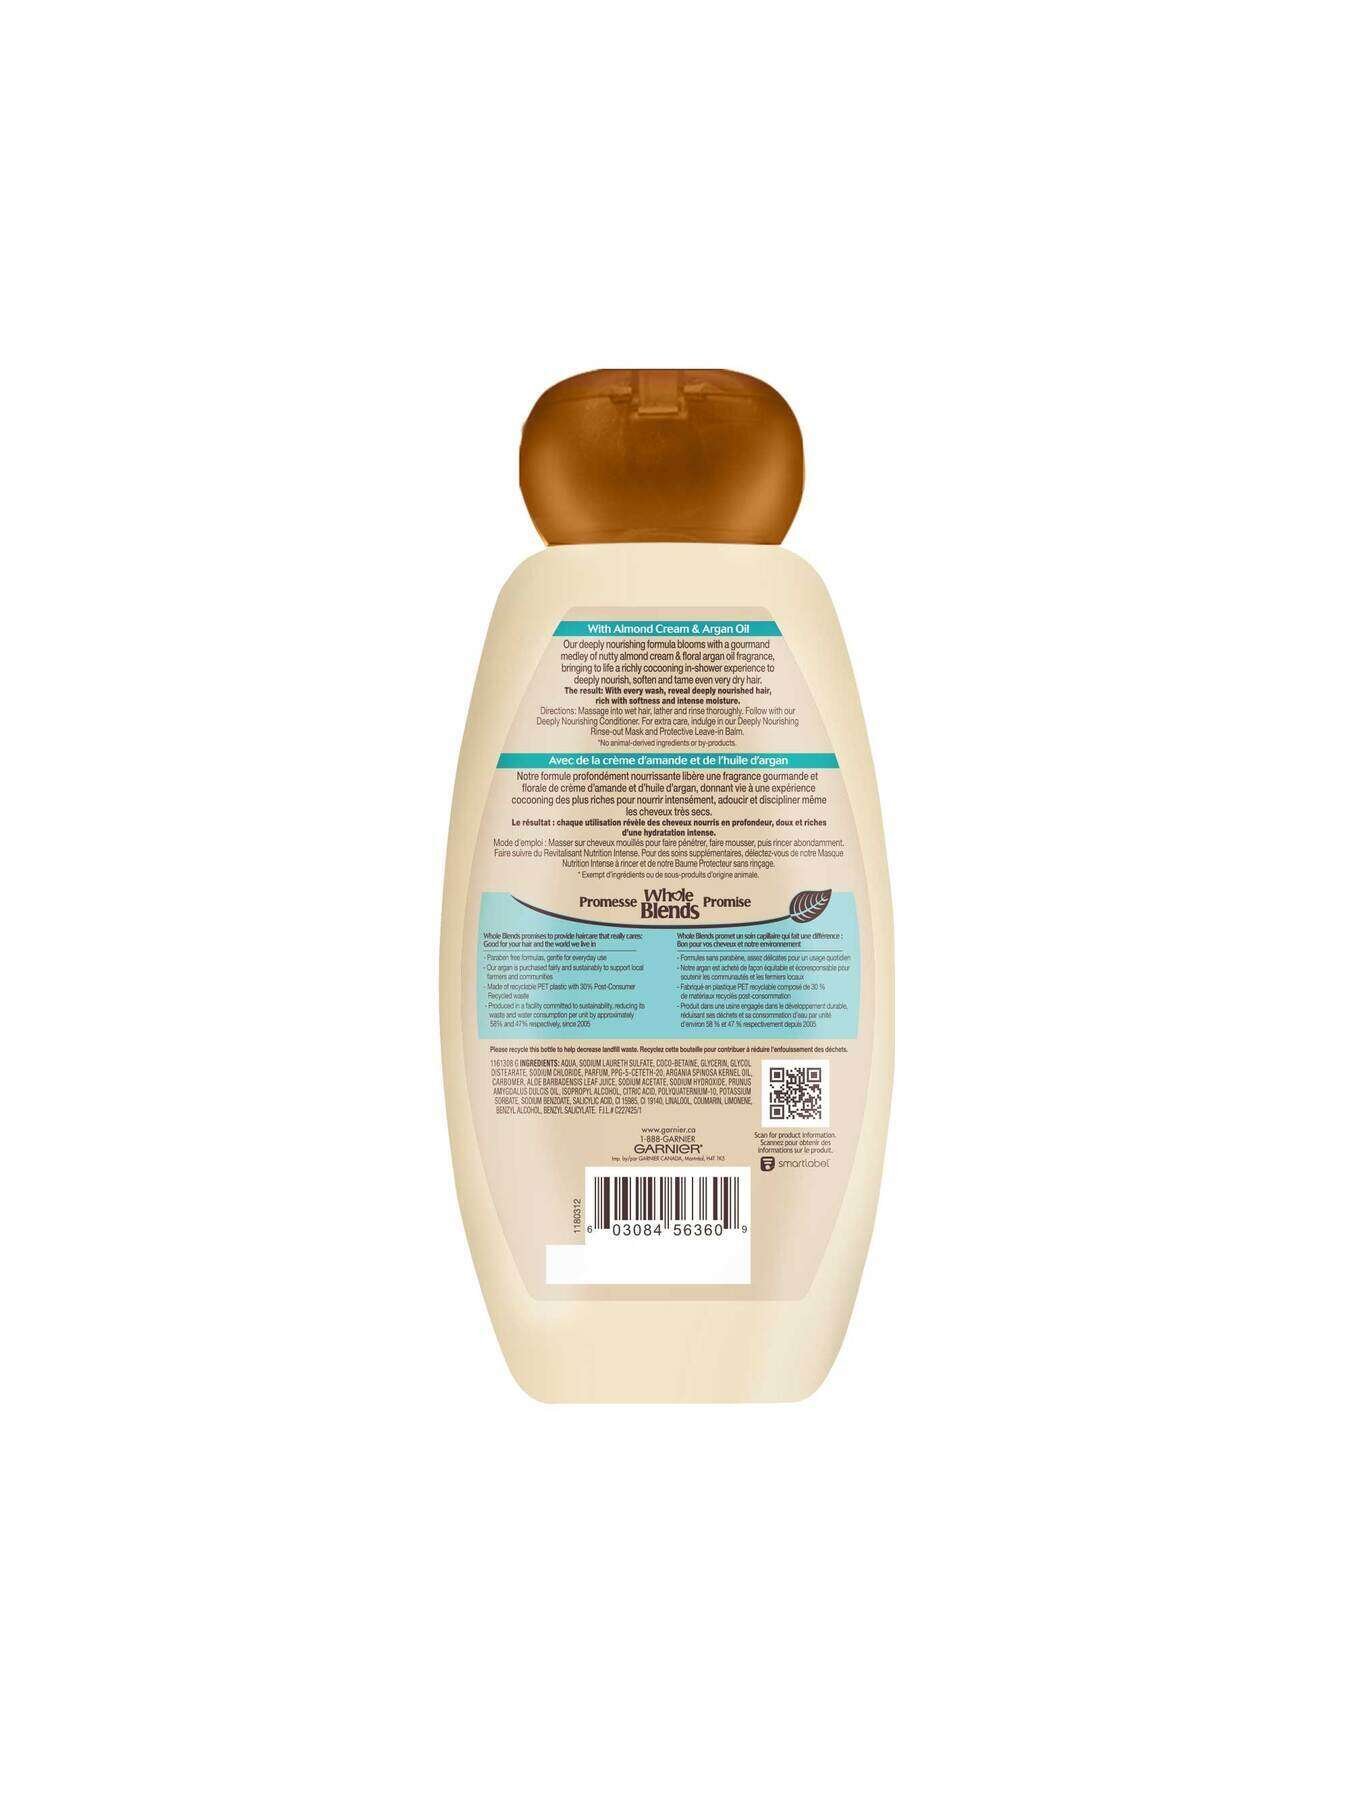 garnier shampoo whole blends almond argan riches shampoo 370 ml 603084563609 t2